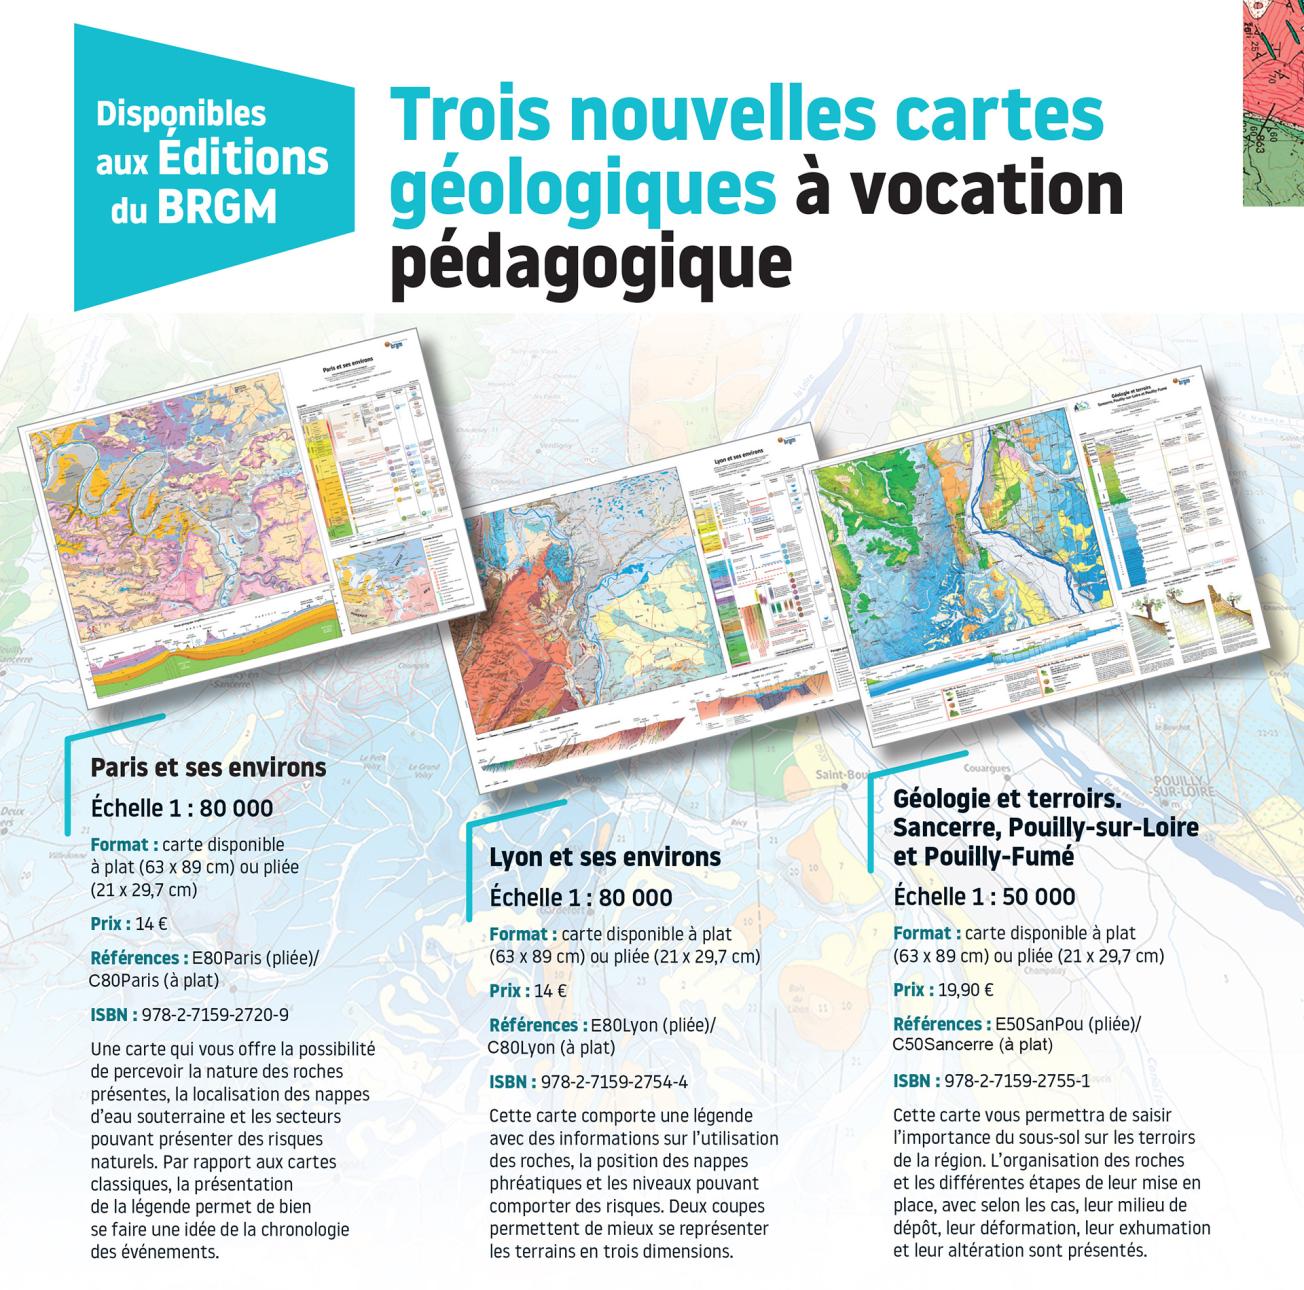 BRGM Éditions proposent 3 nouvelles cartes géologiques à vocation pédagogiques